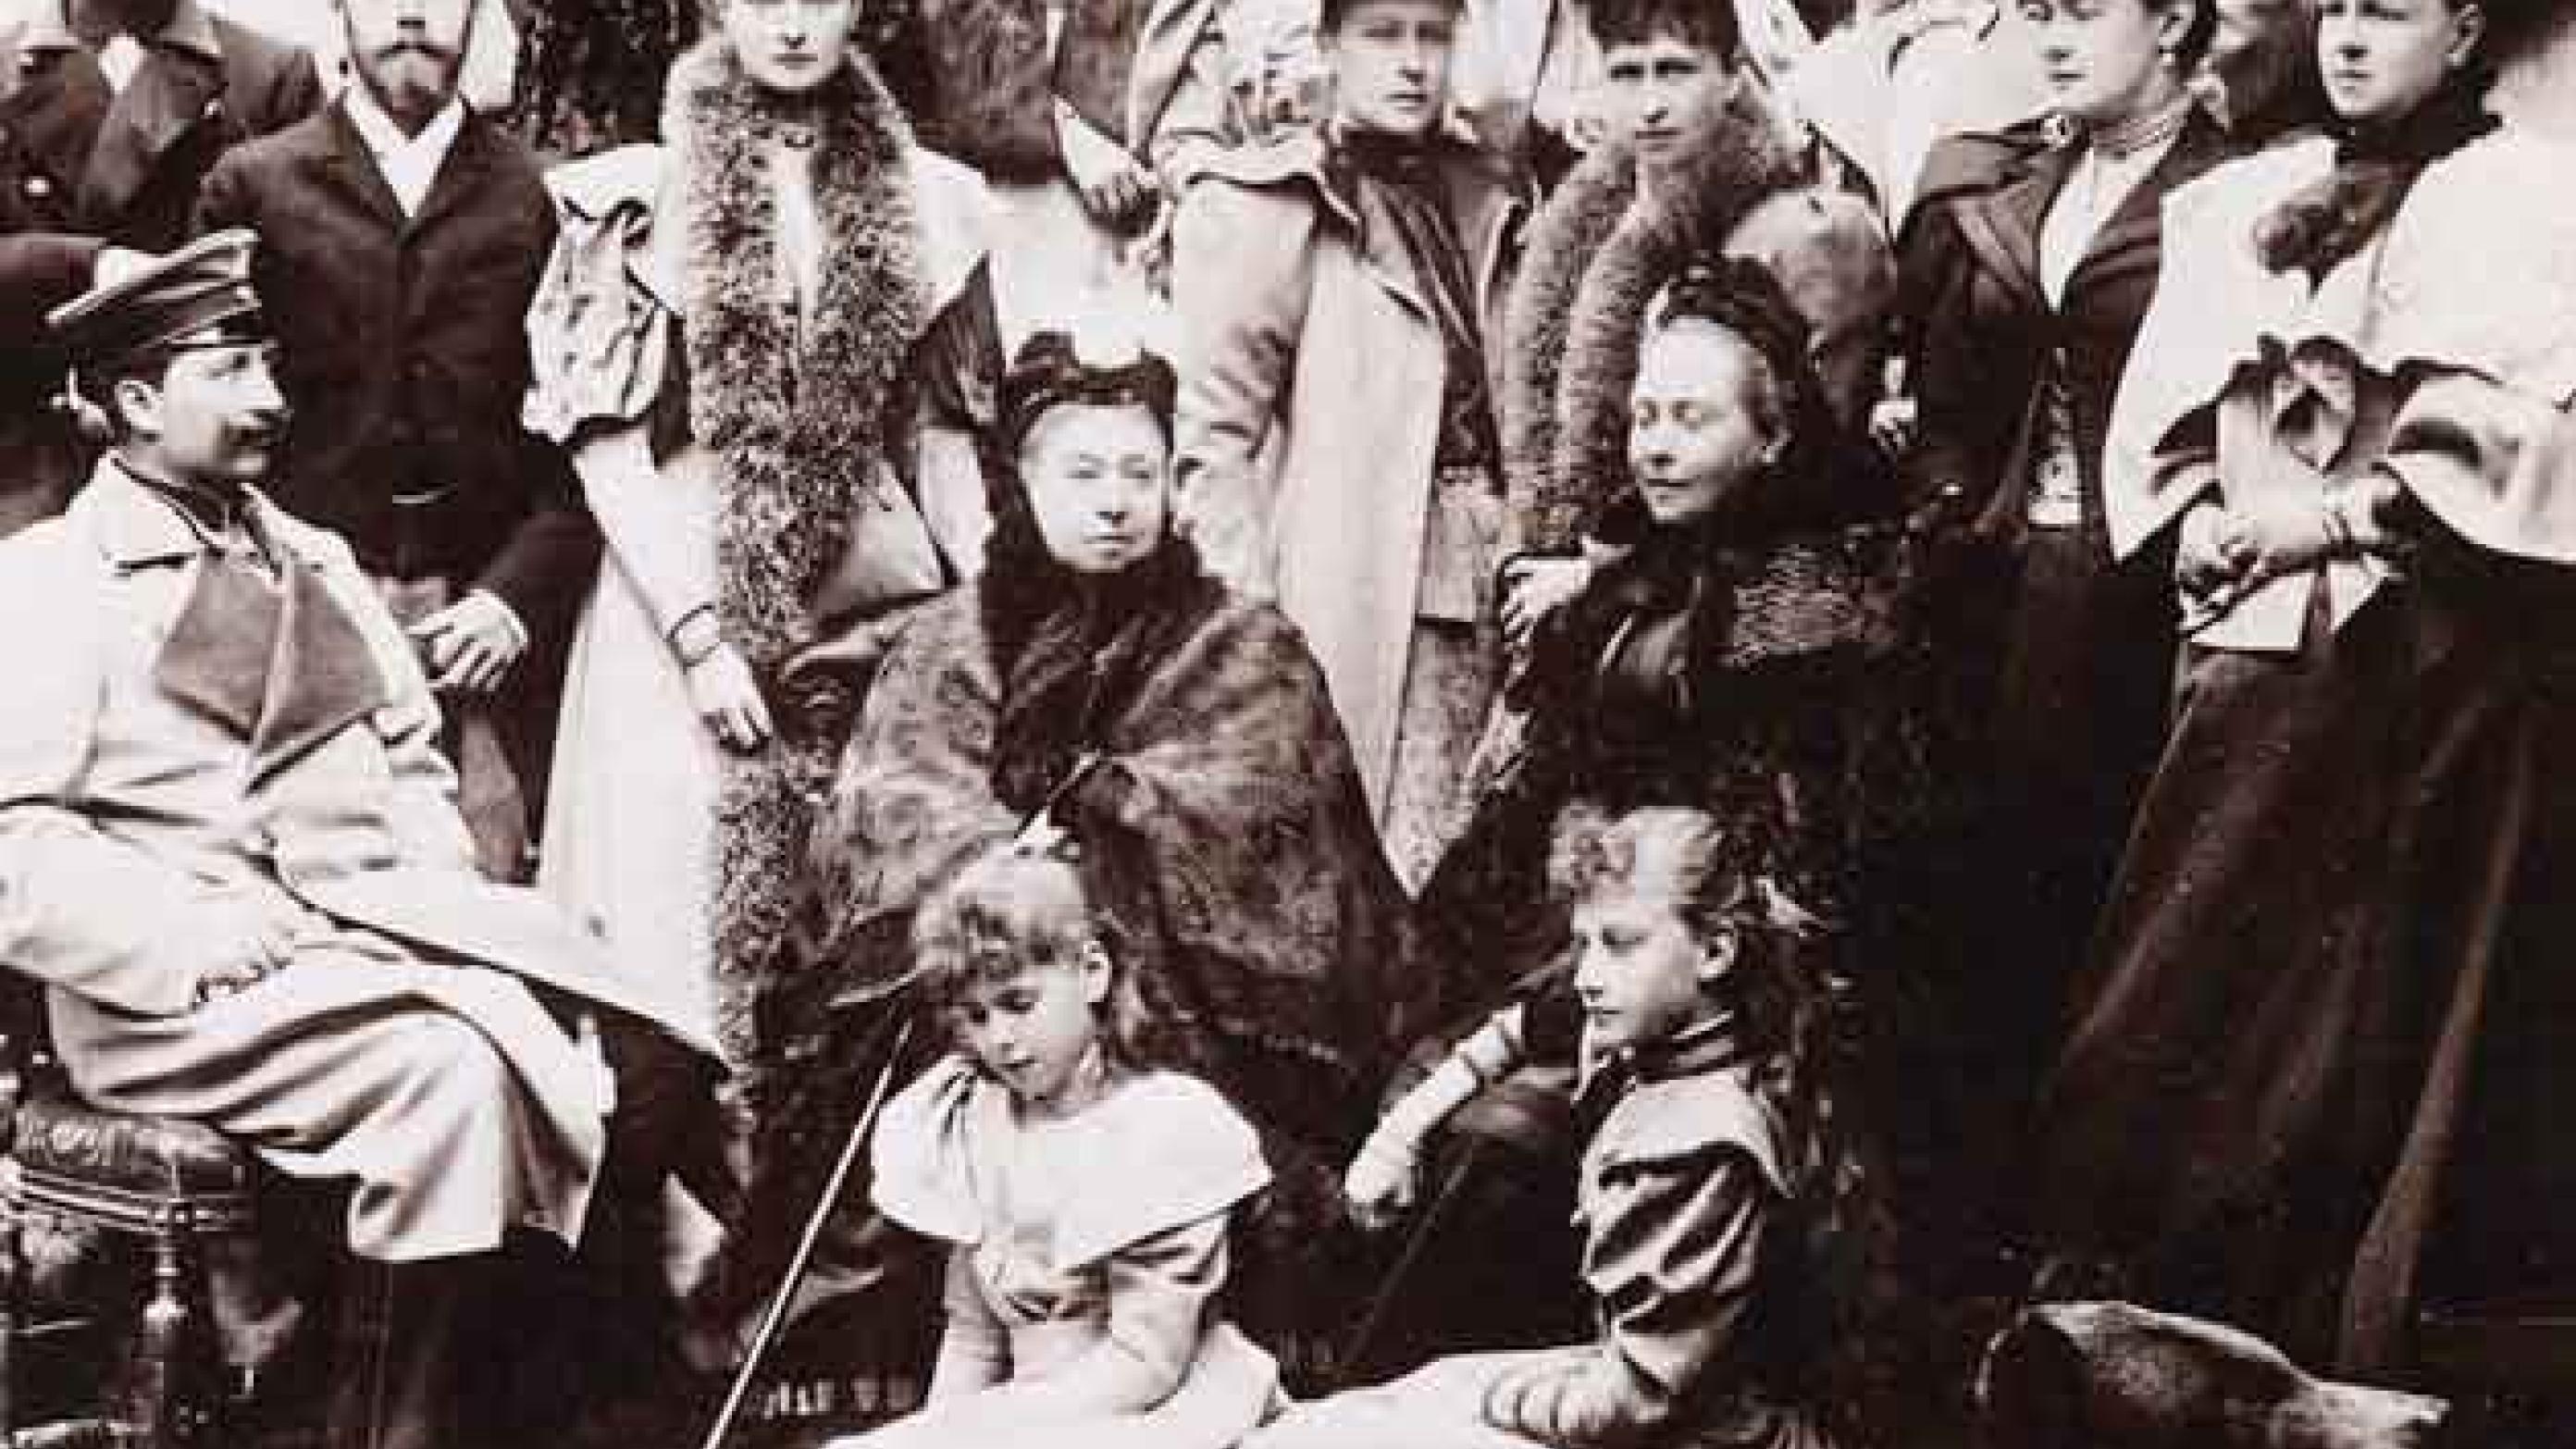 Dronning Victoria – kongelig bærer af blødergenet – med familien omkring sig.